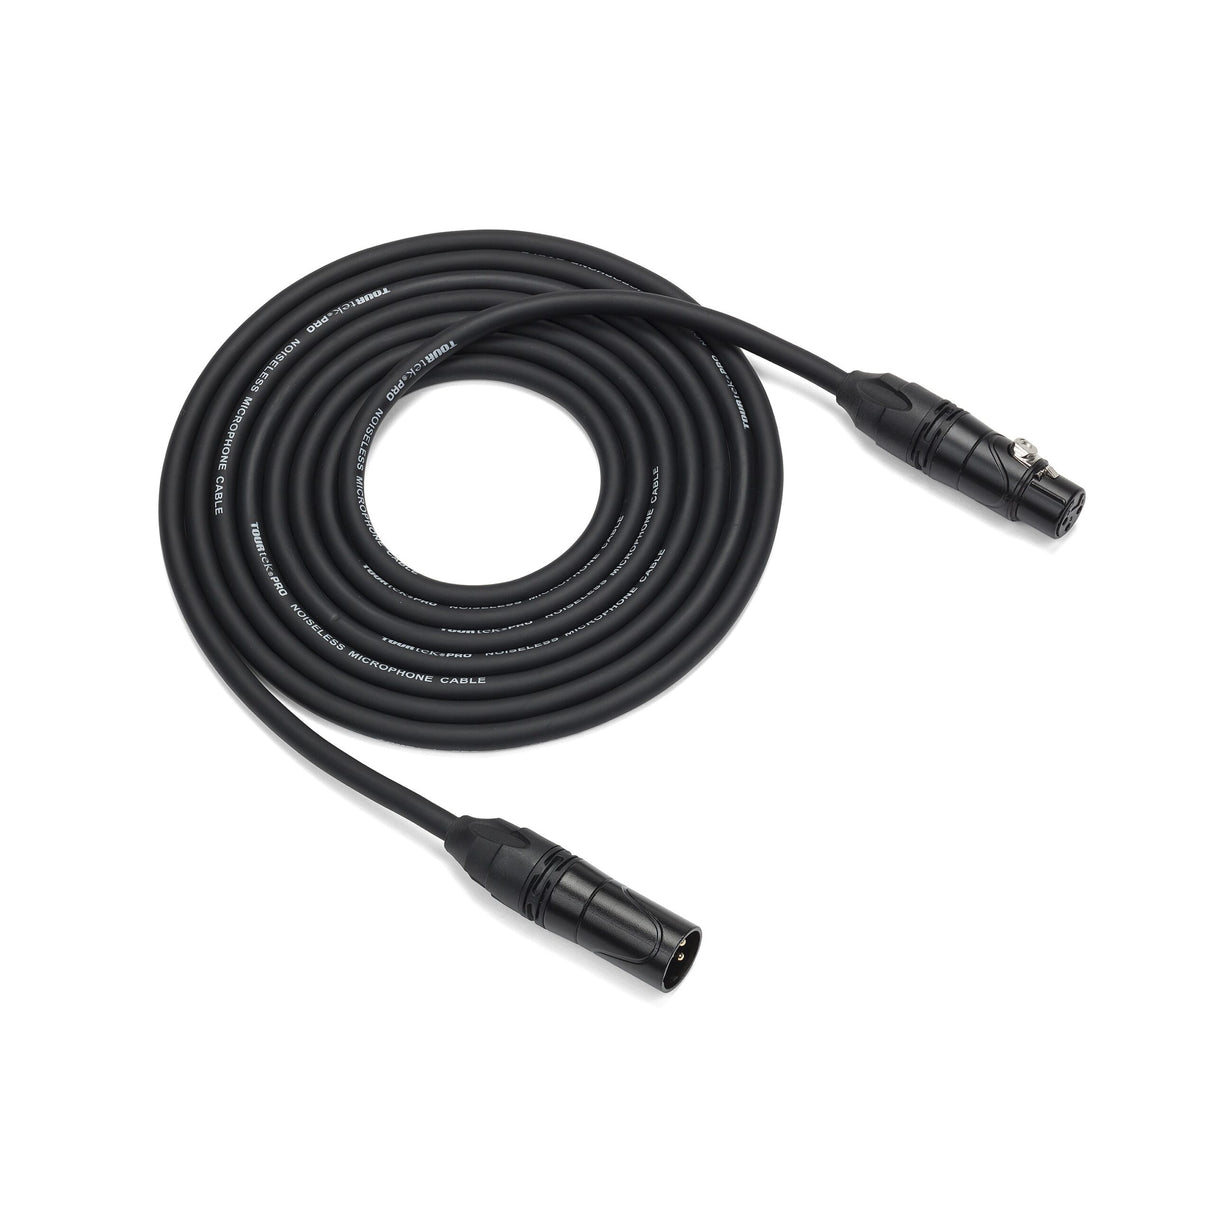 Samson Tourtek Pro TPM Microphone Cable, 15 Foot